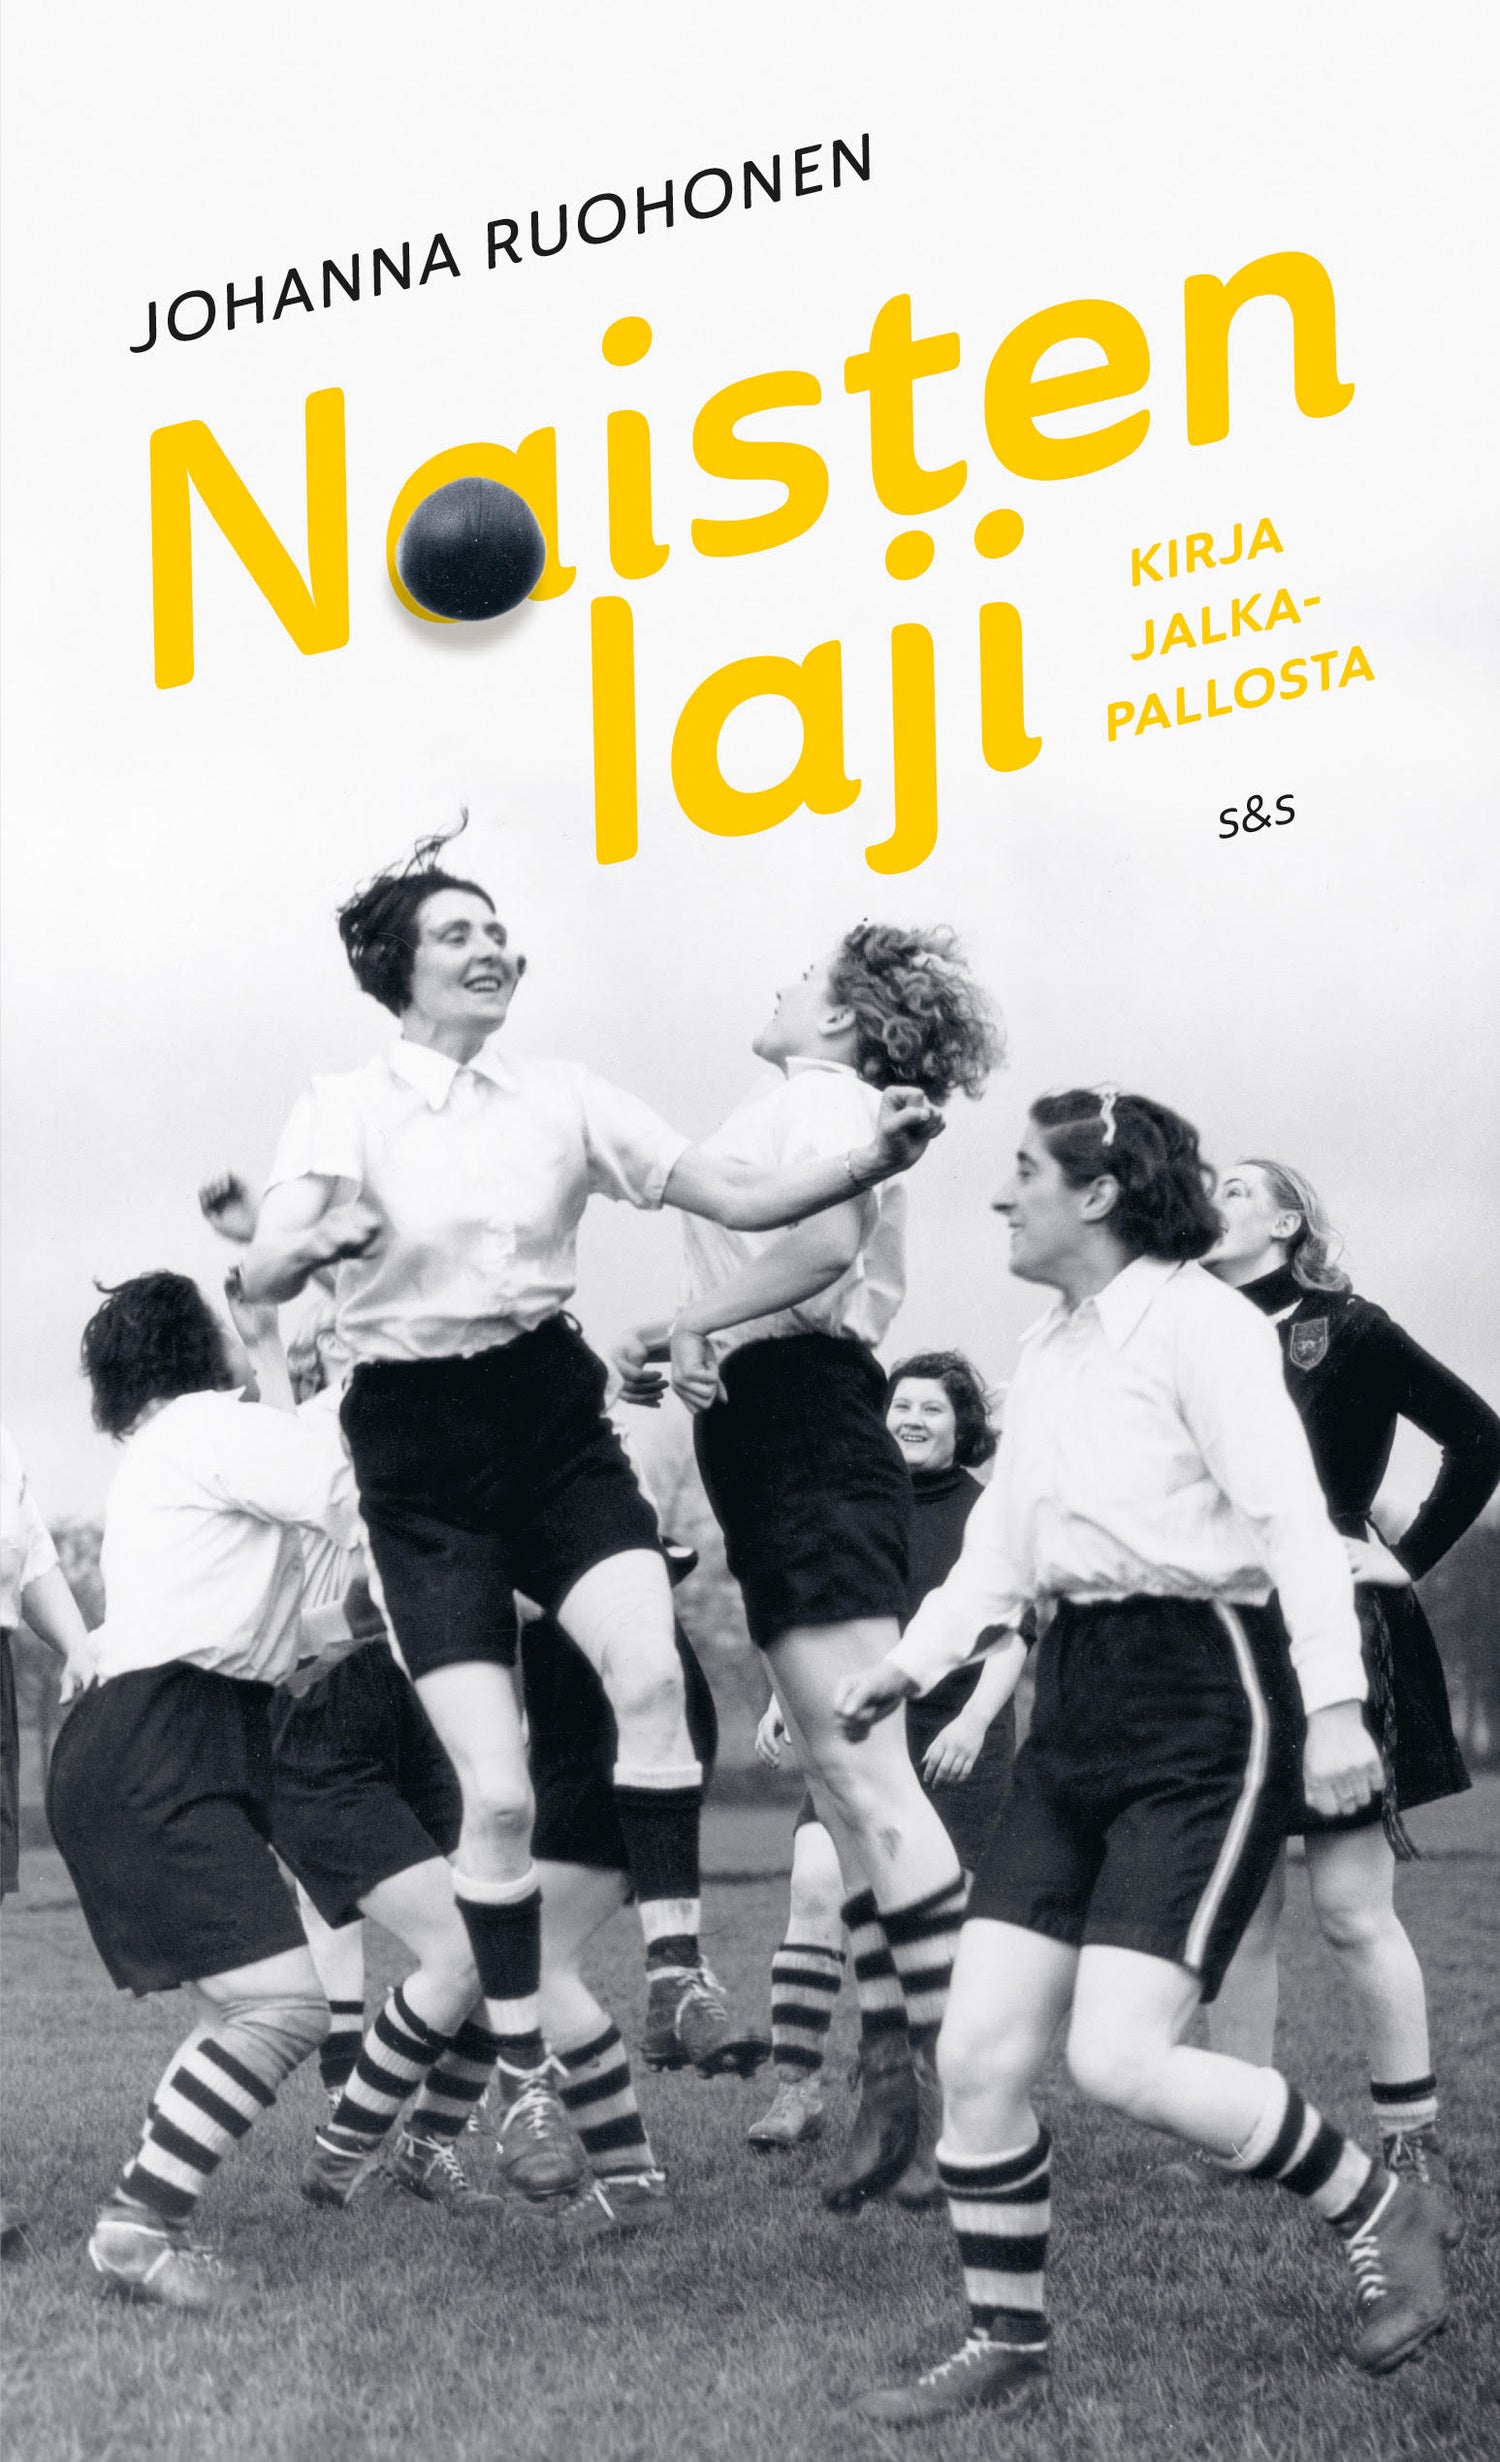 Naisten laji - Kirja jalkapallosta